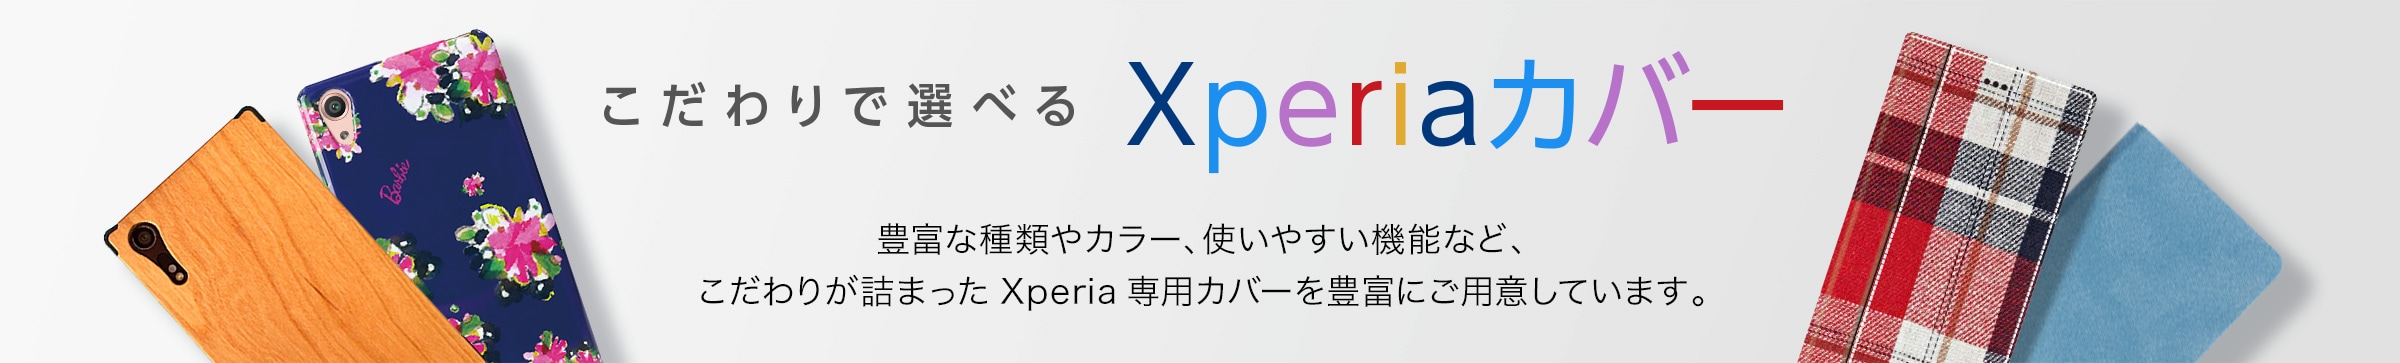 こだわりで選べる Xperia（エクスペリア）カバー　豊富な種類やカラー、使いやすい機能など、こだわりが詰まったXperia専用カバーを豊富にご用意しています。